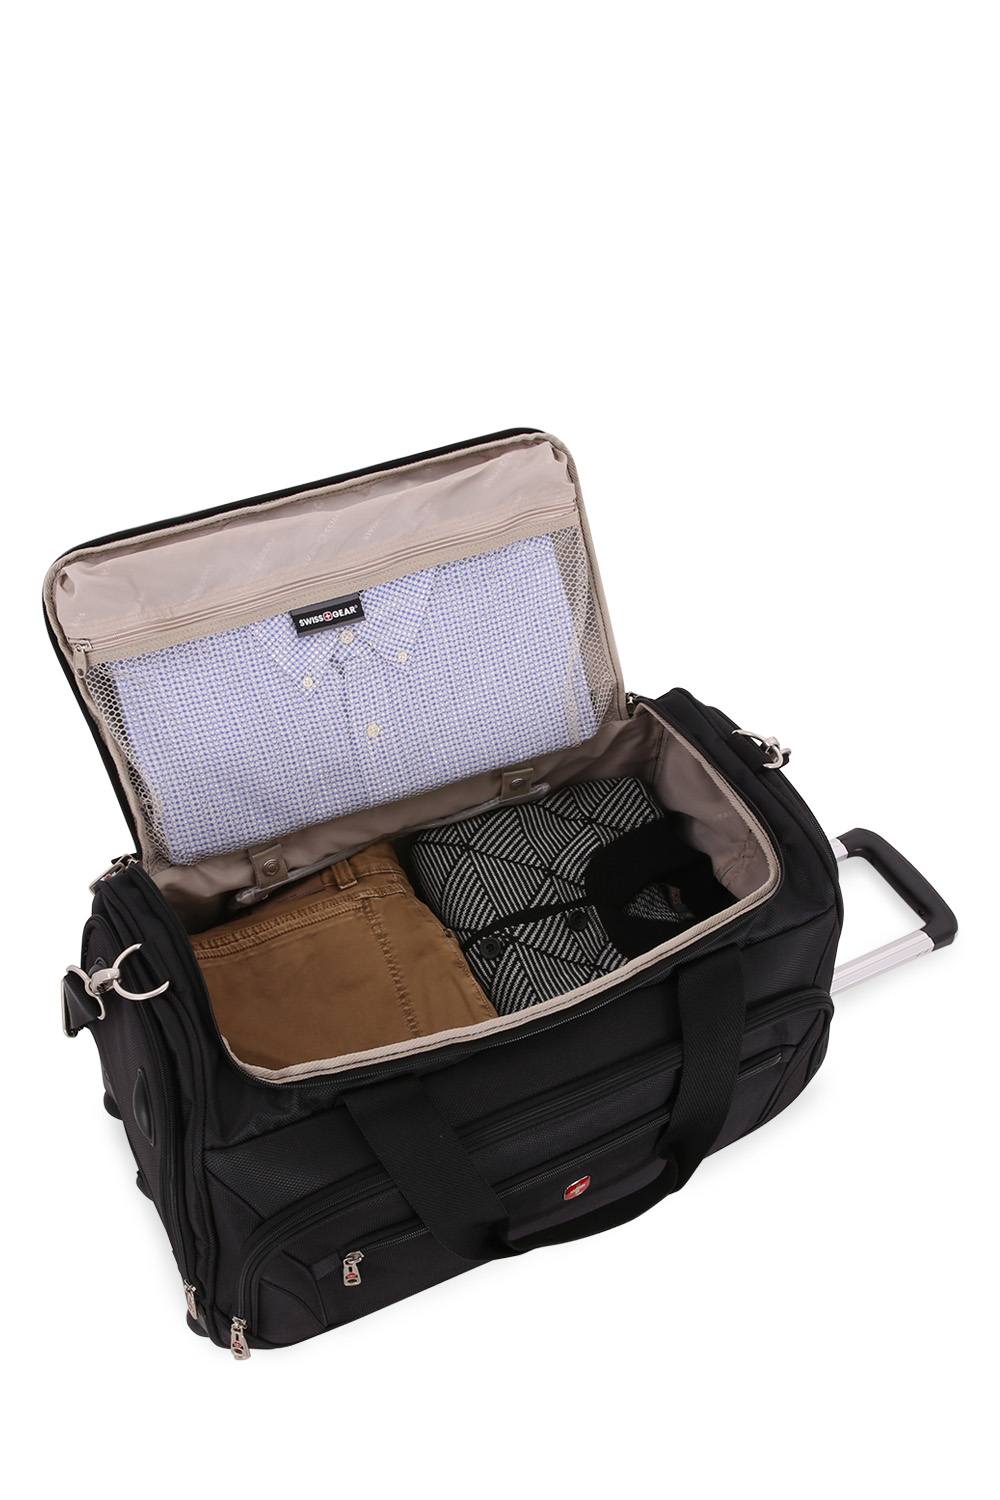 wheeled duffle bag luggage